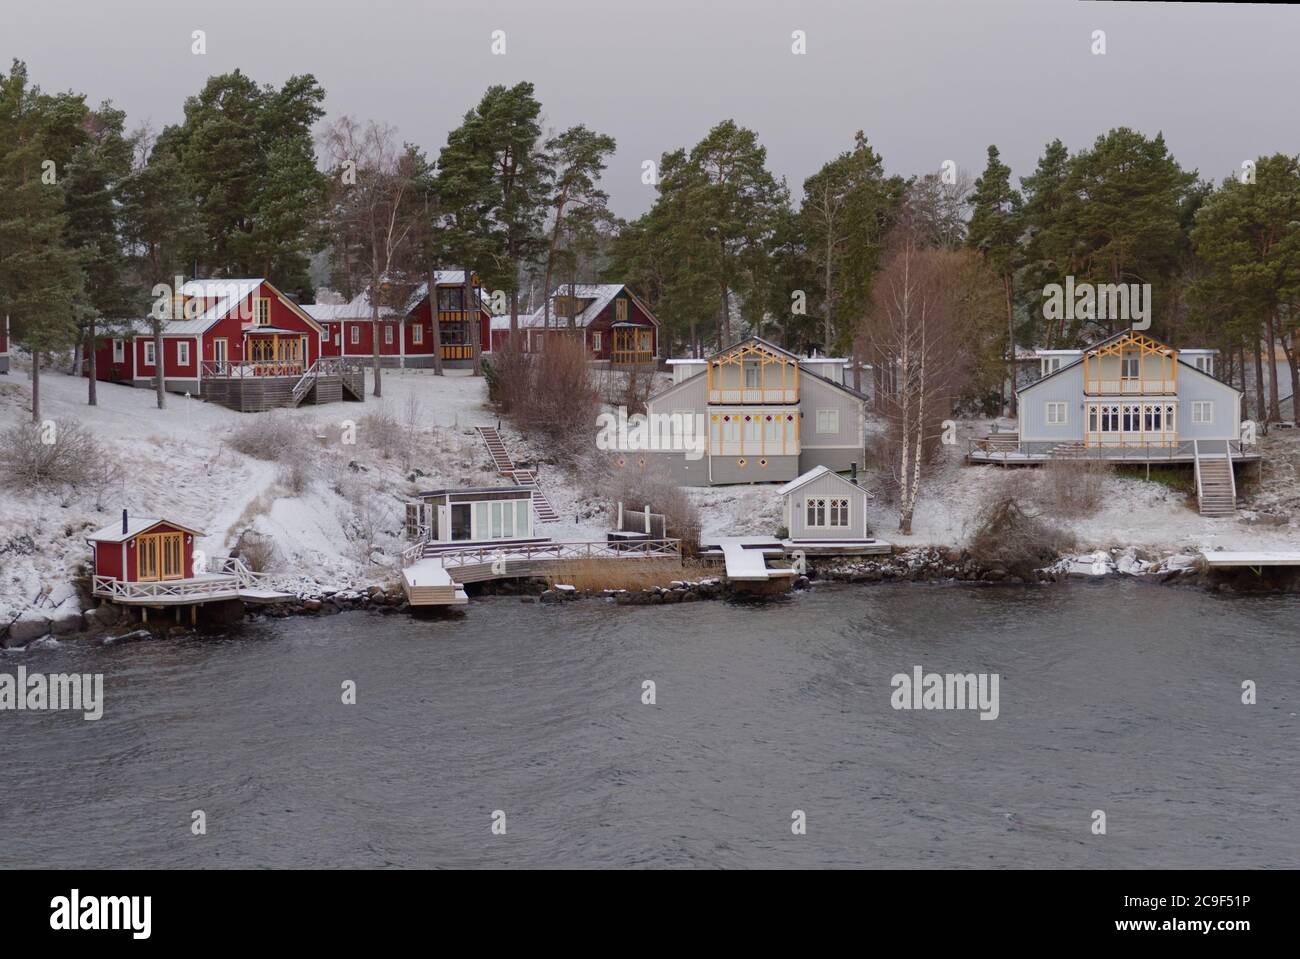 Casas de madera del archipiélago de Estocolmo en invierno, Suecia Foto de stock